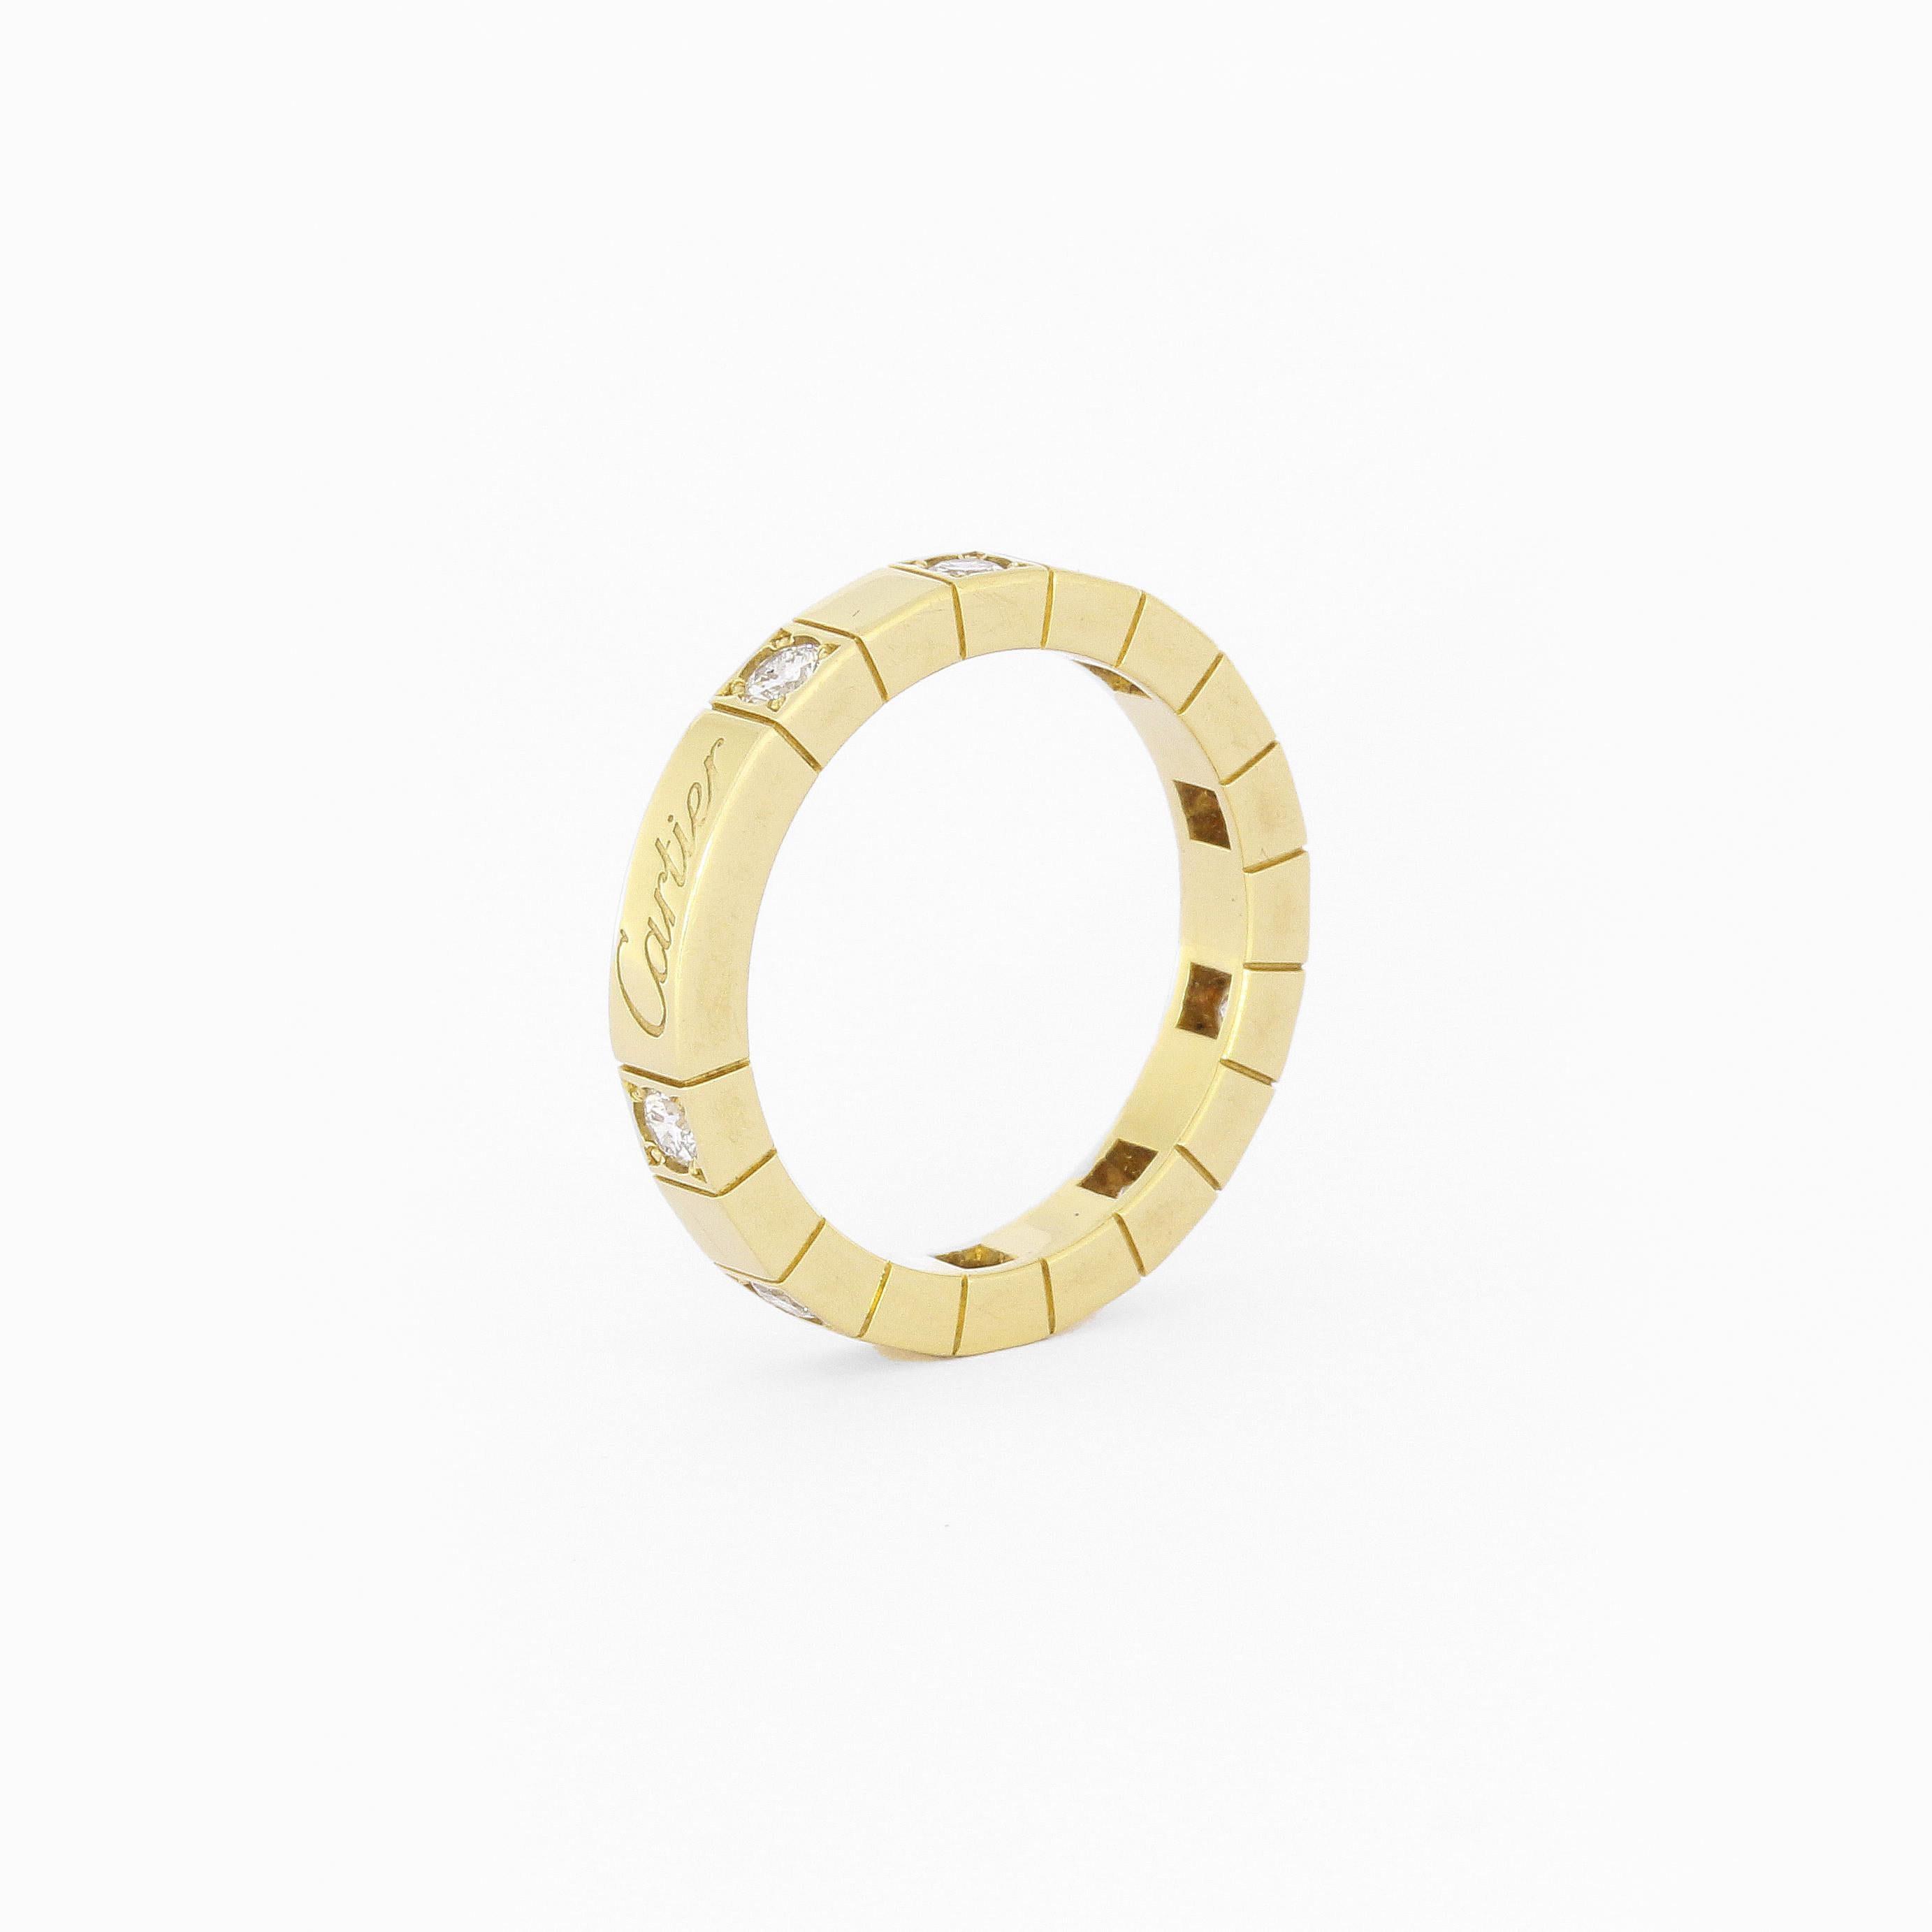 18 Gelbgold Cartier Lanières Ring mit 9 Diamanten ca. 0,36 Karat

Größe 50